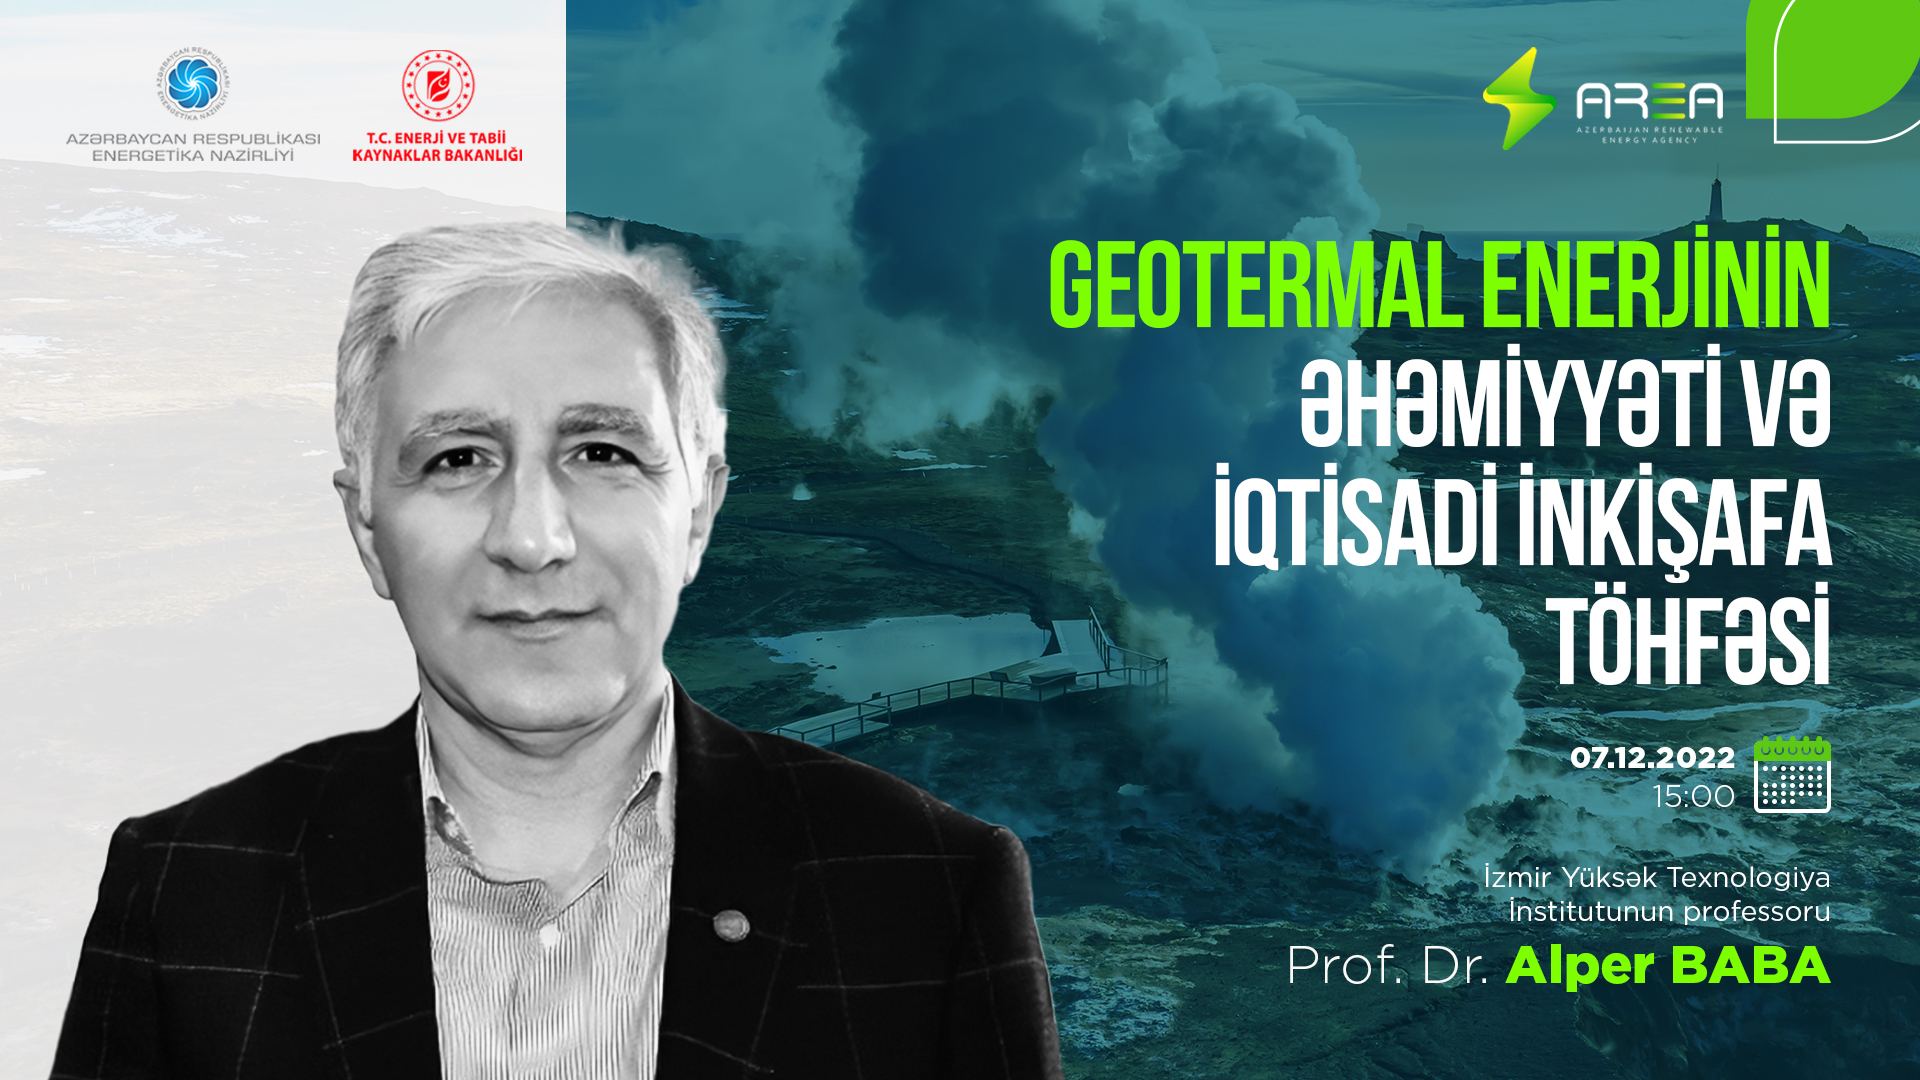 “Geotermal enerjinin əhəmiyyəti və iqtisadi inkişafa töhfəsi” mövzusunda vebinar keçiriləcək